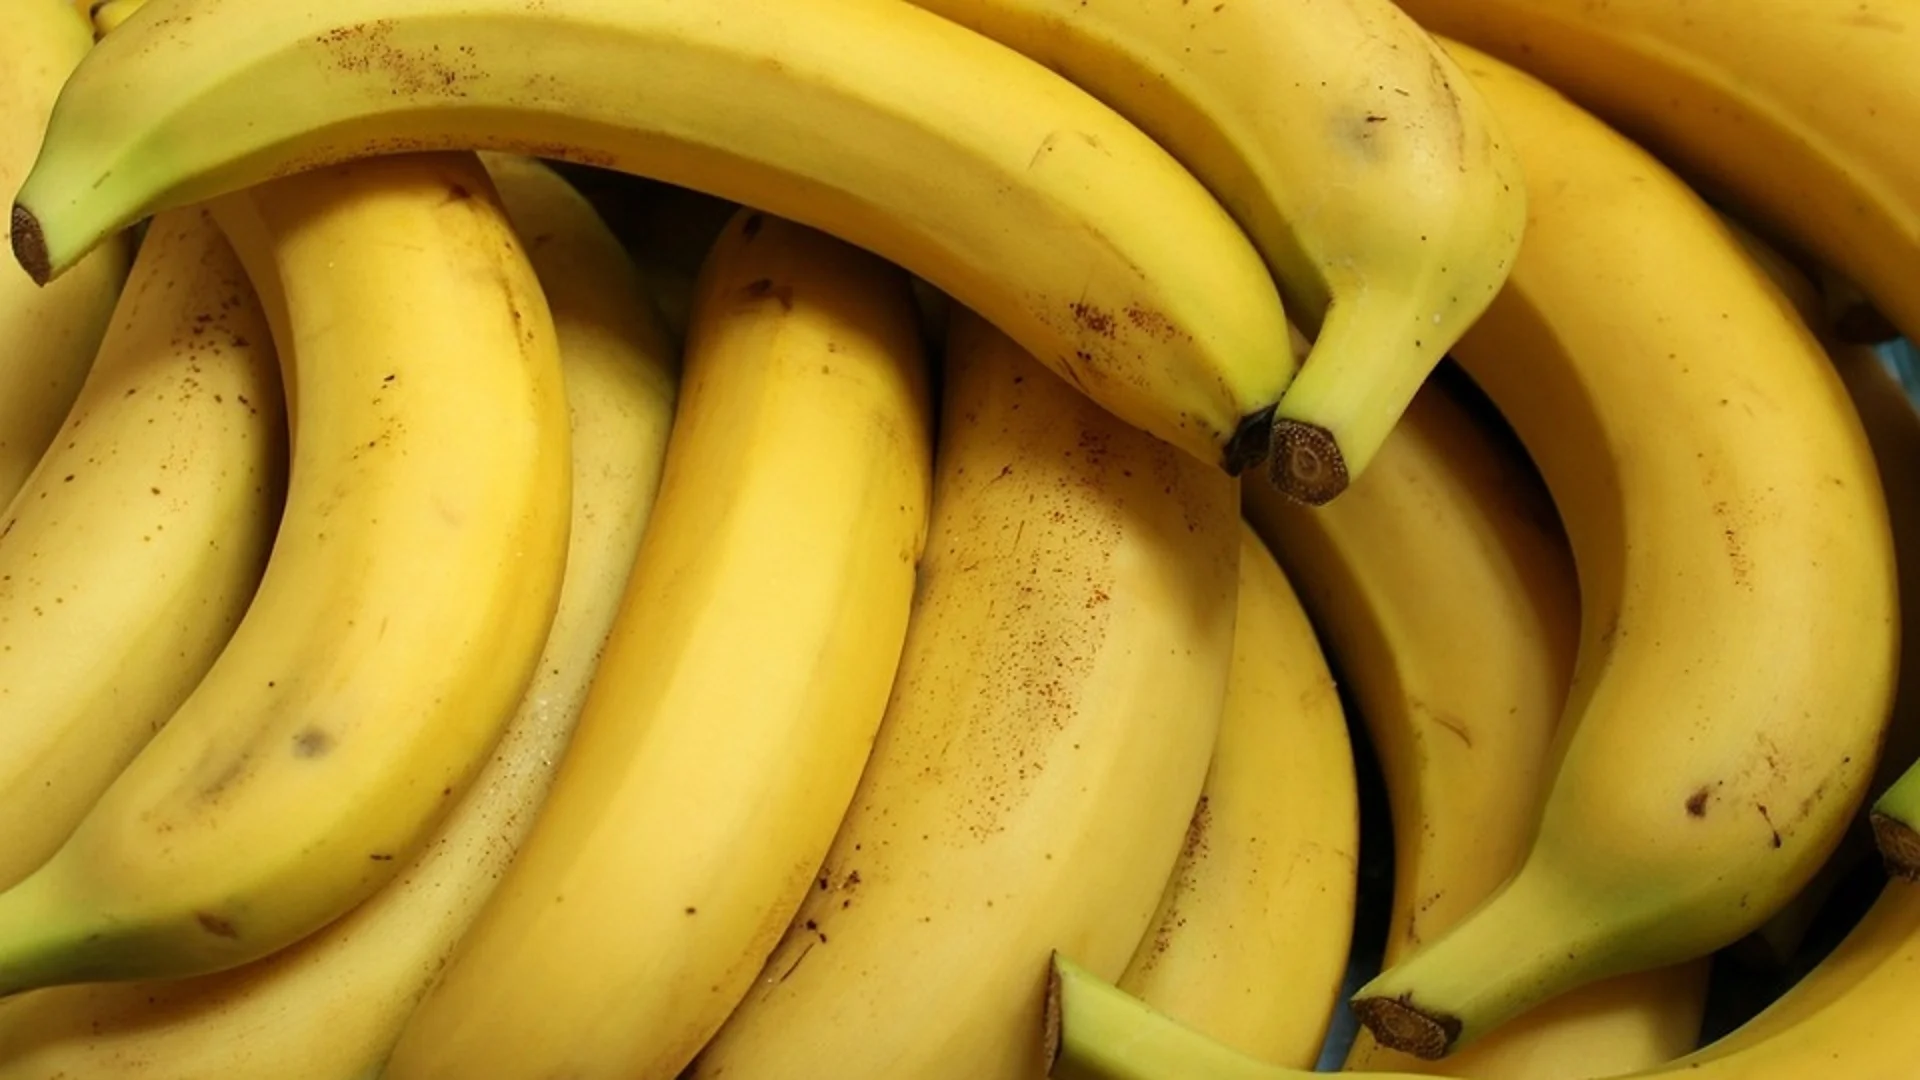 Откриха над 220 кг кокаин сред банани в магазини в Германия